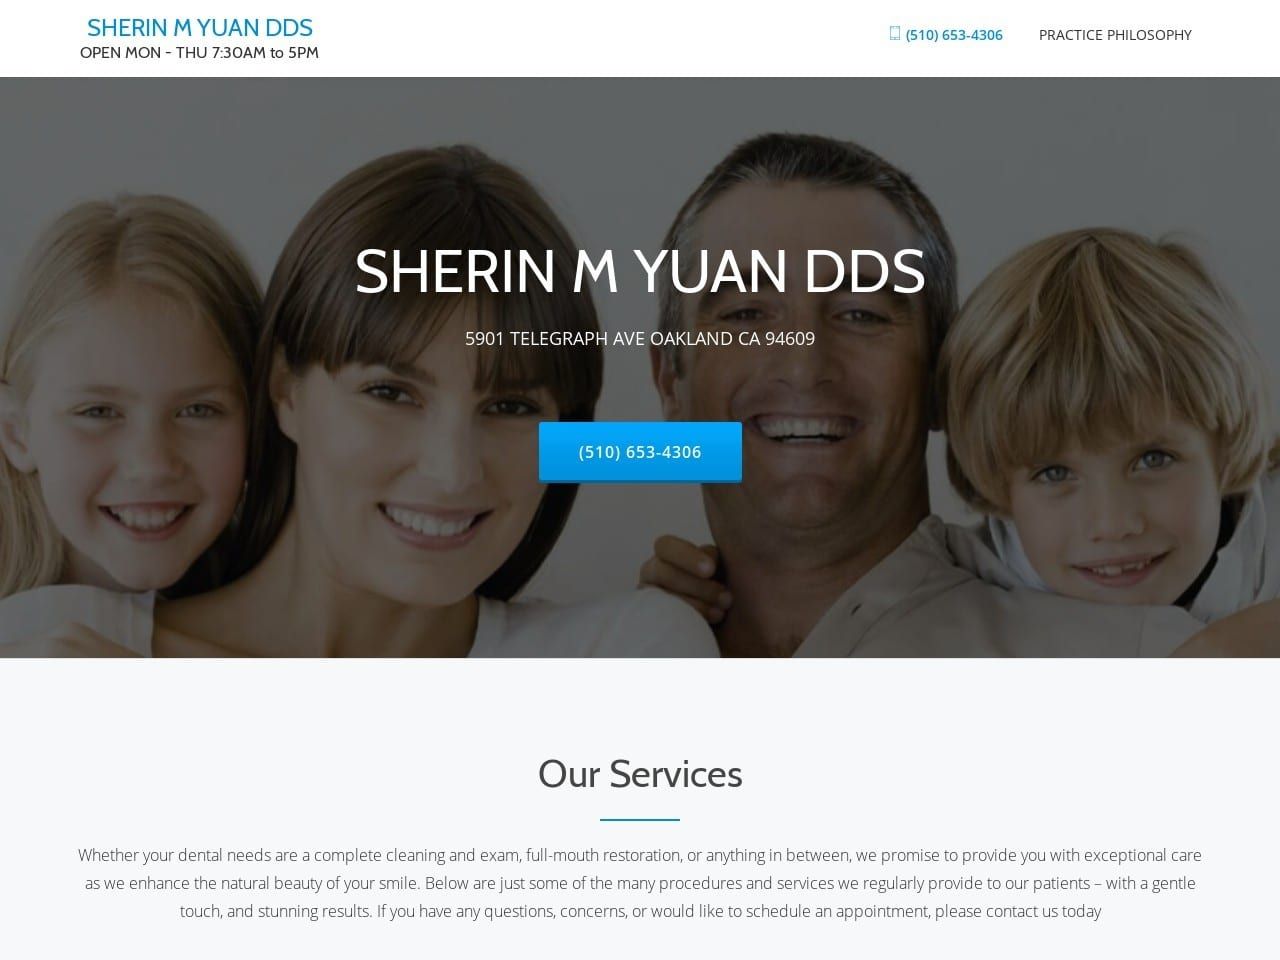 Sherin M Yuan DDS Website Screenshot from rockridgedentist.com